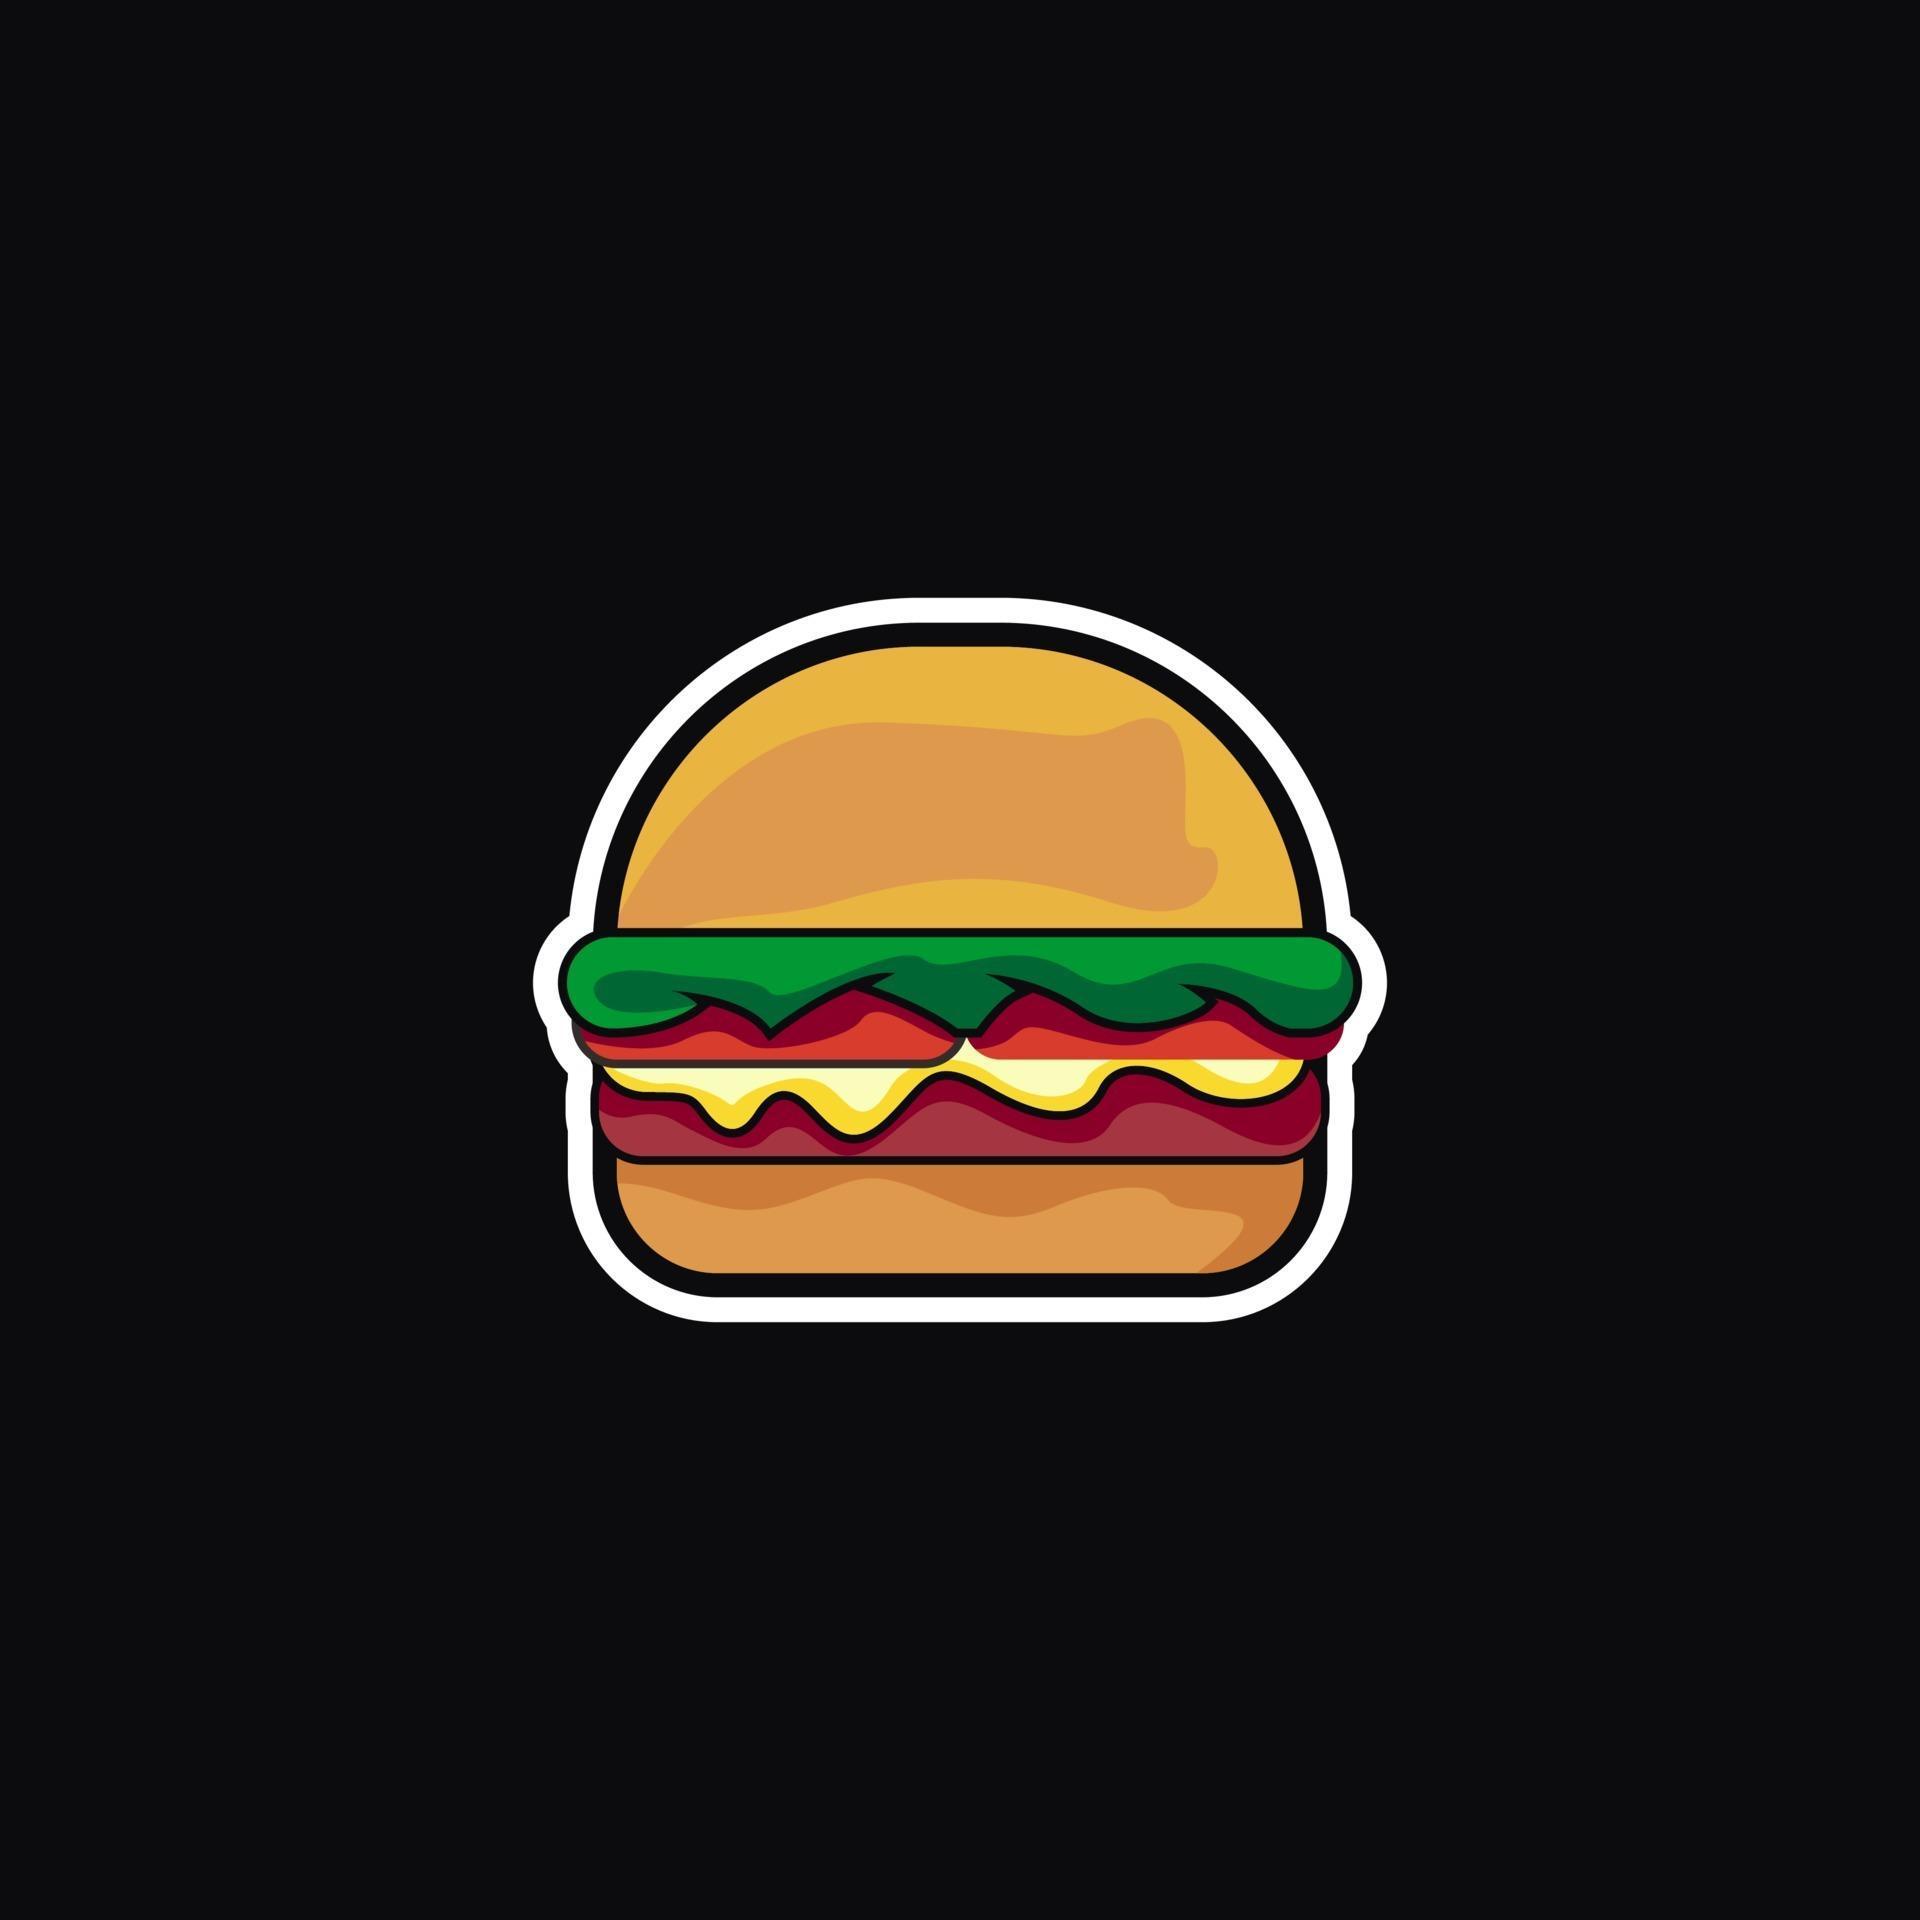 burger logo ideas 2